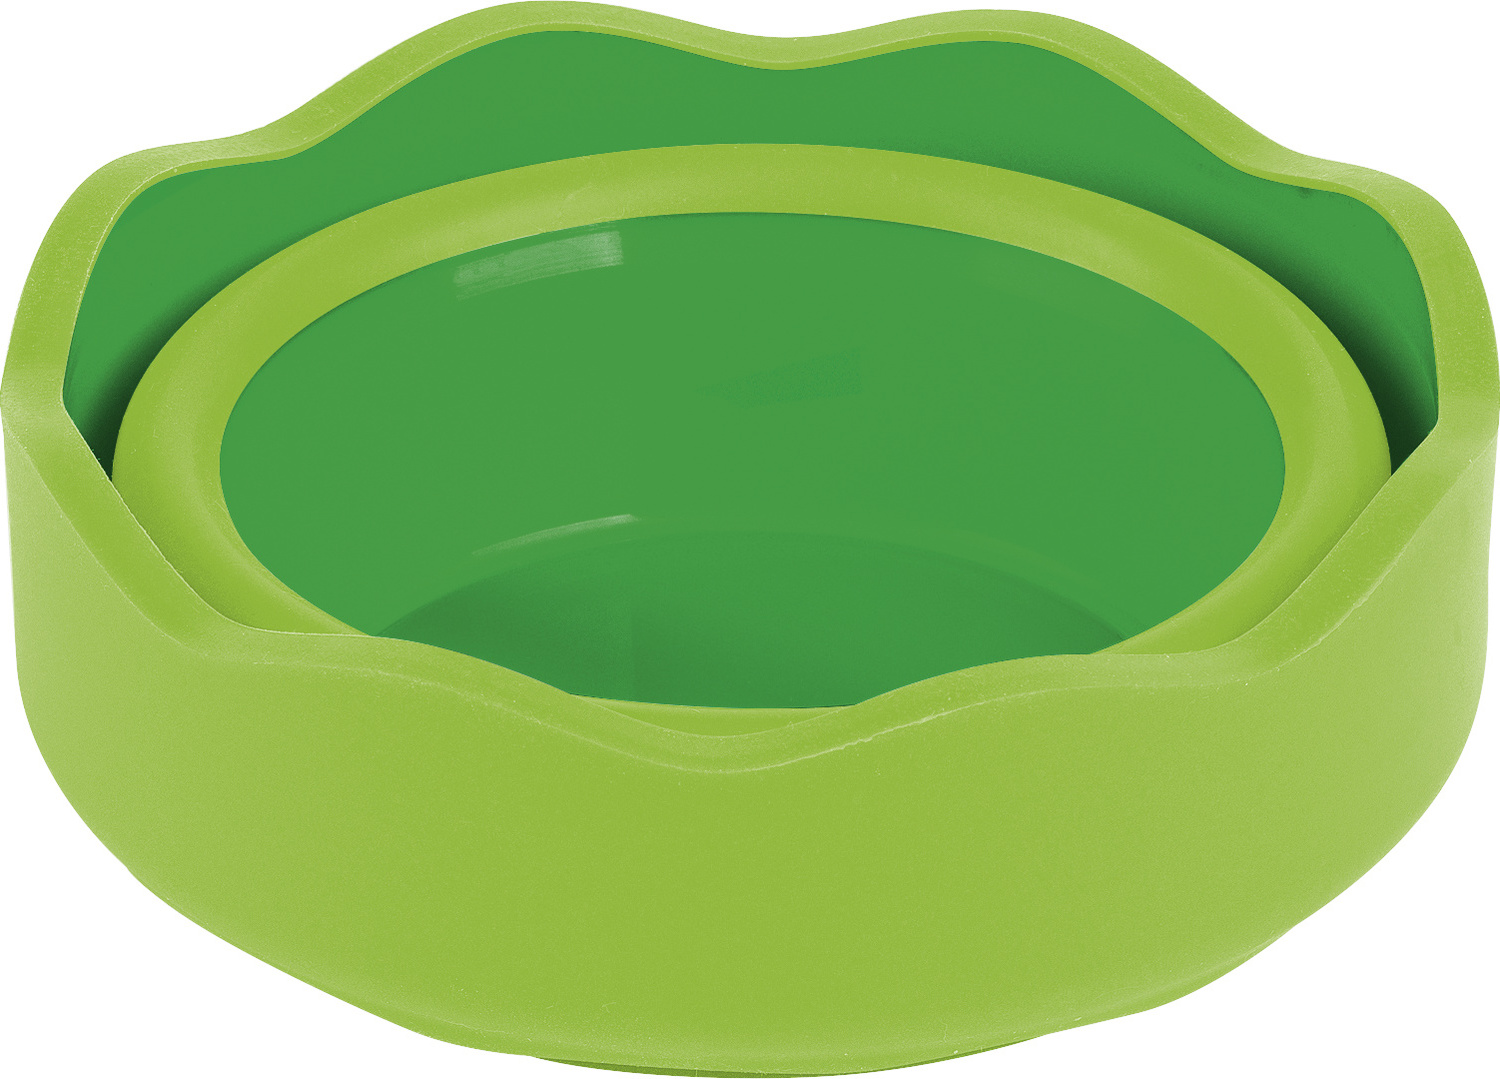 Gobelet à eau pliable vert Clic and go Faber-Castell Ø 97 mm